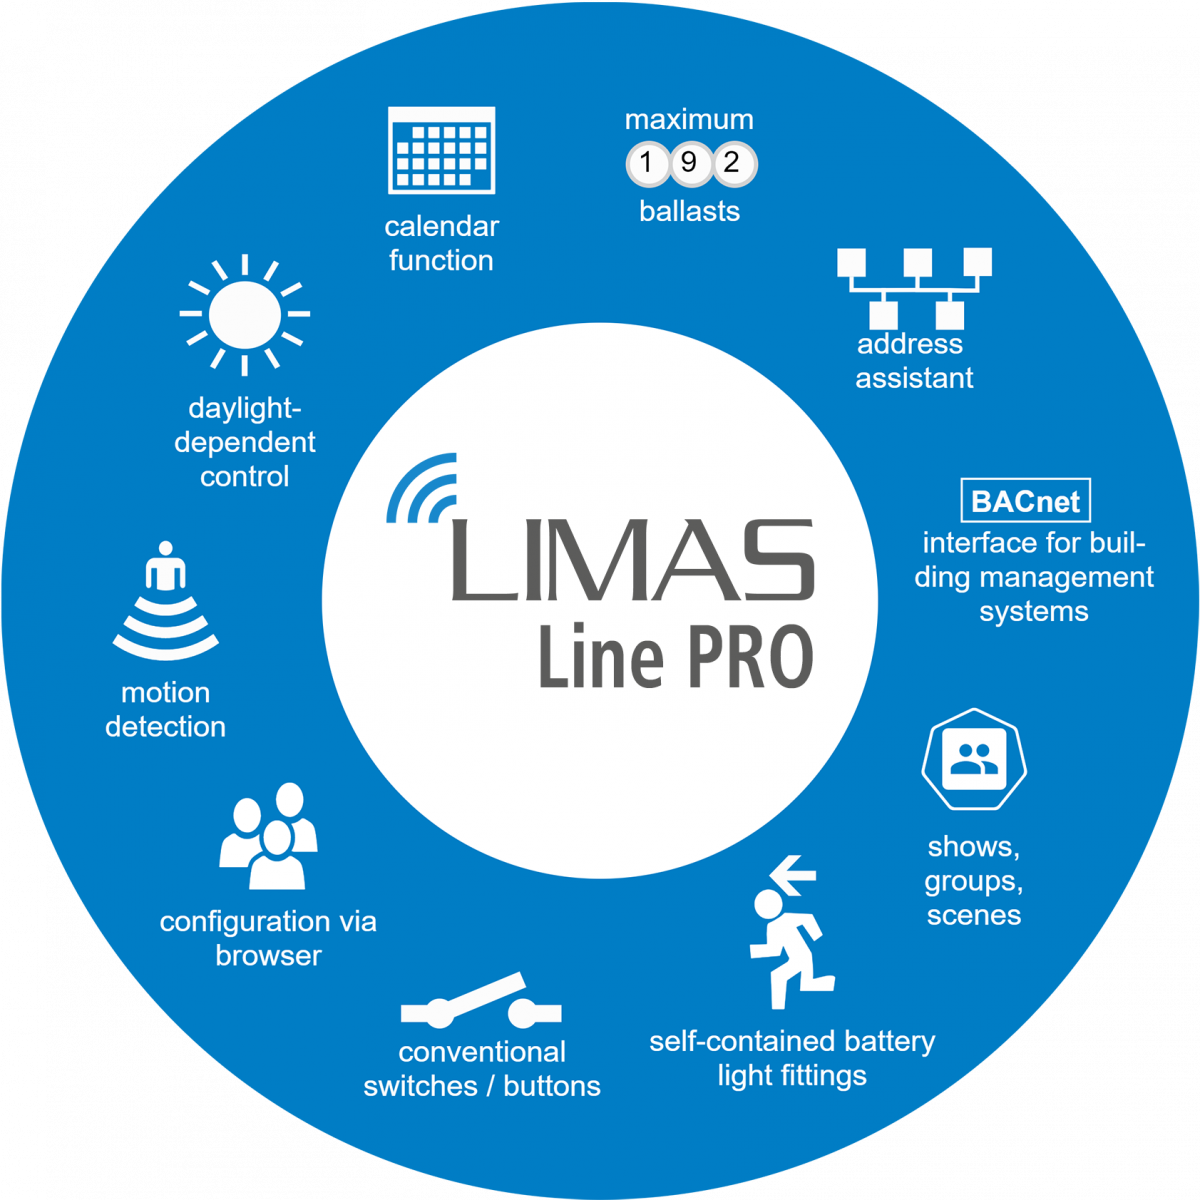 LIMAS Line PRO